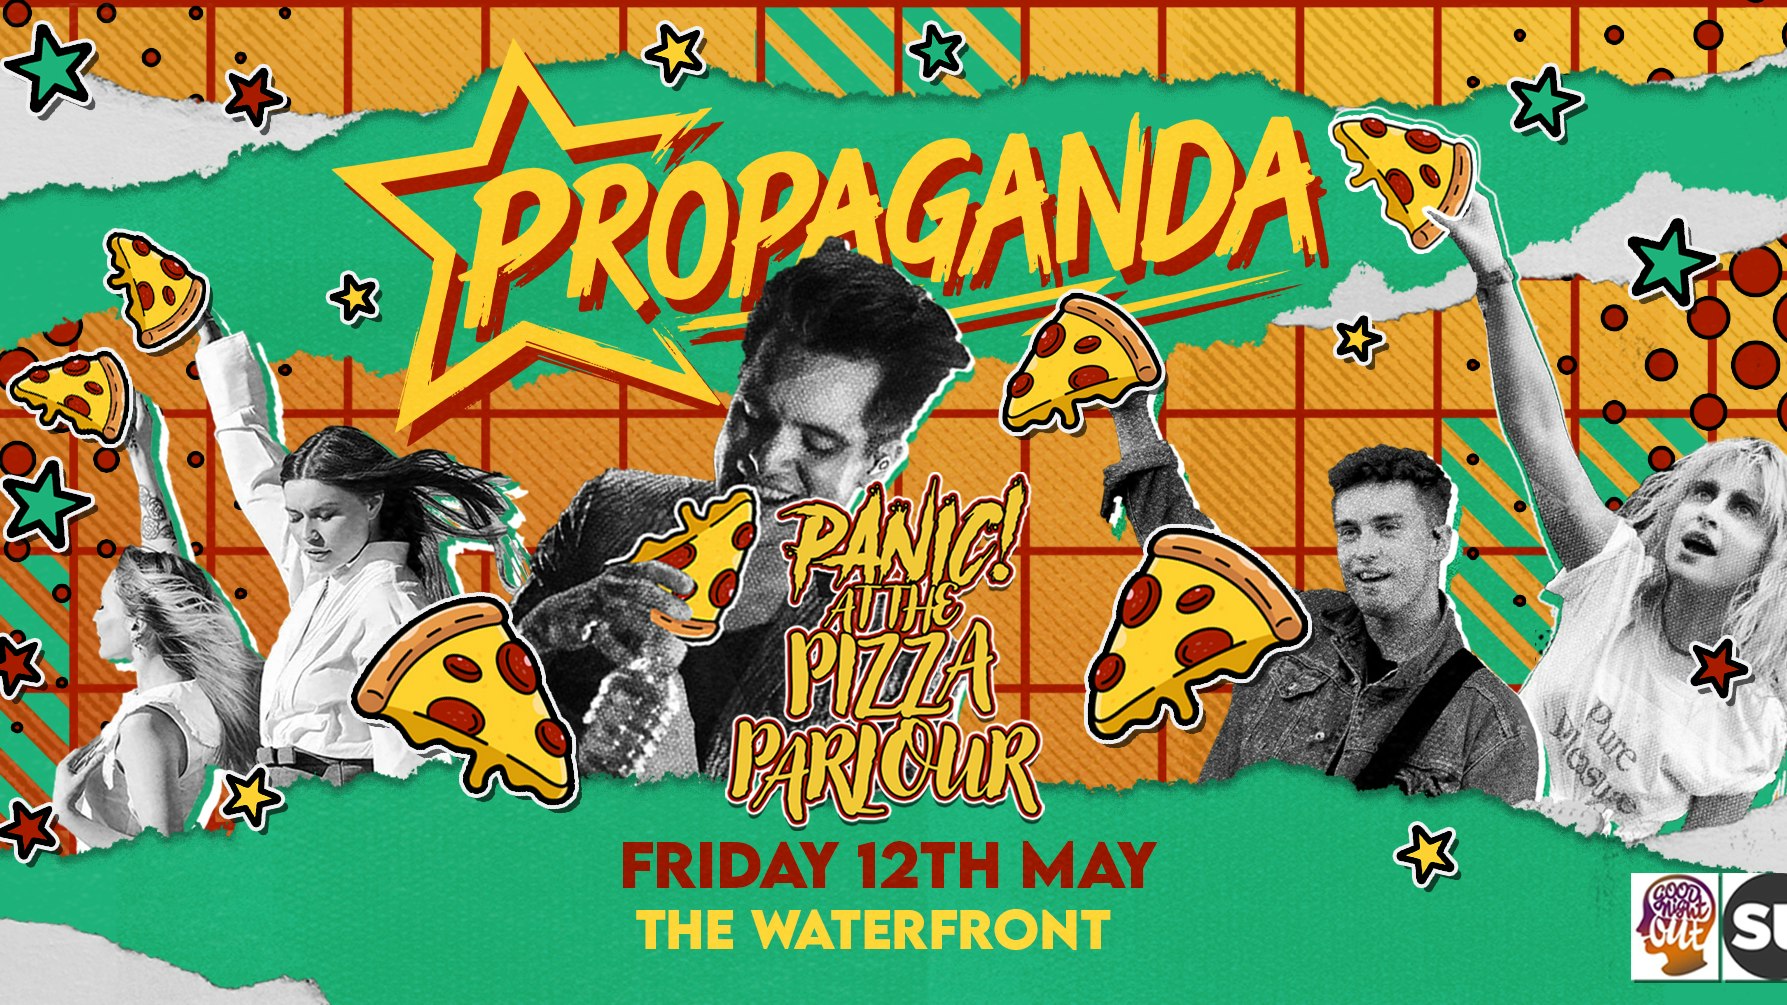 Propaganda Norwich – Pizza Party!